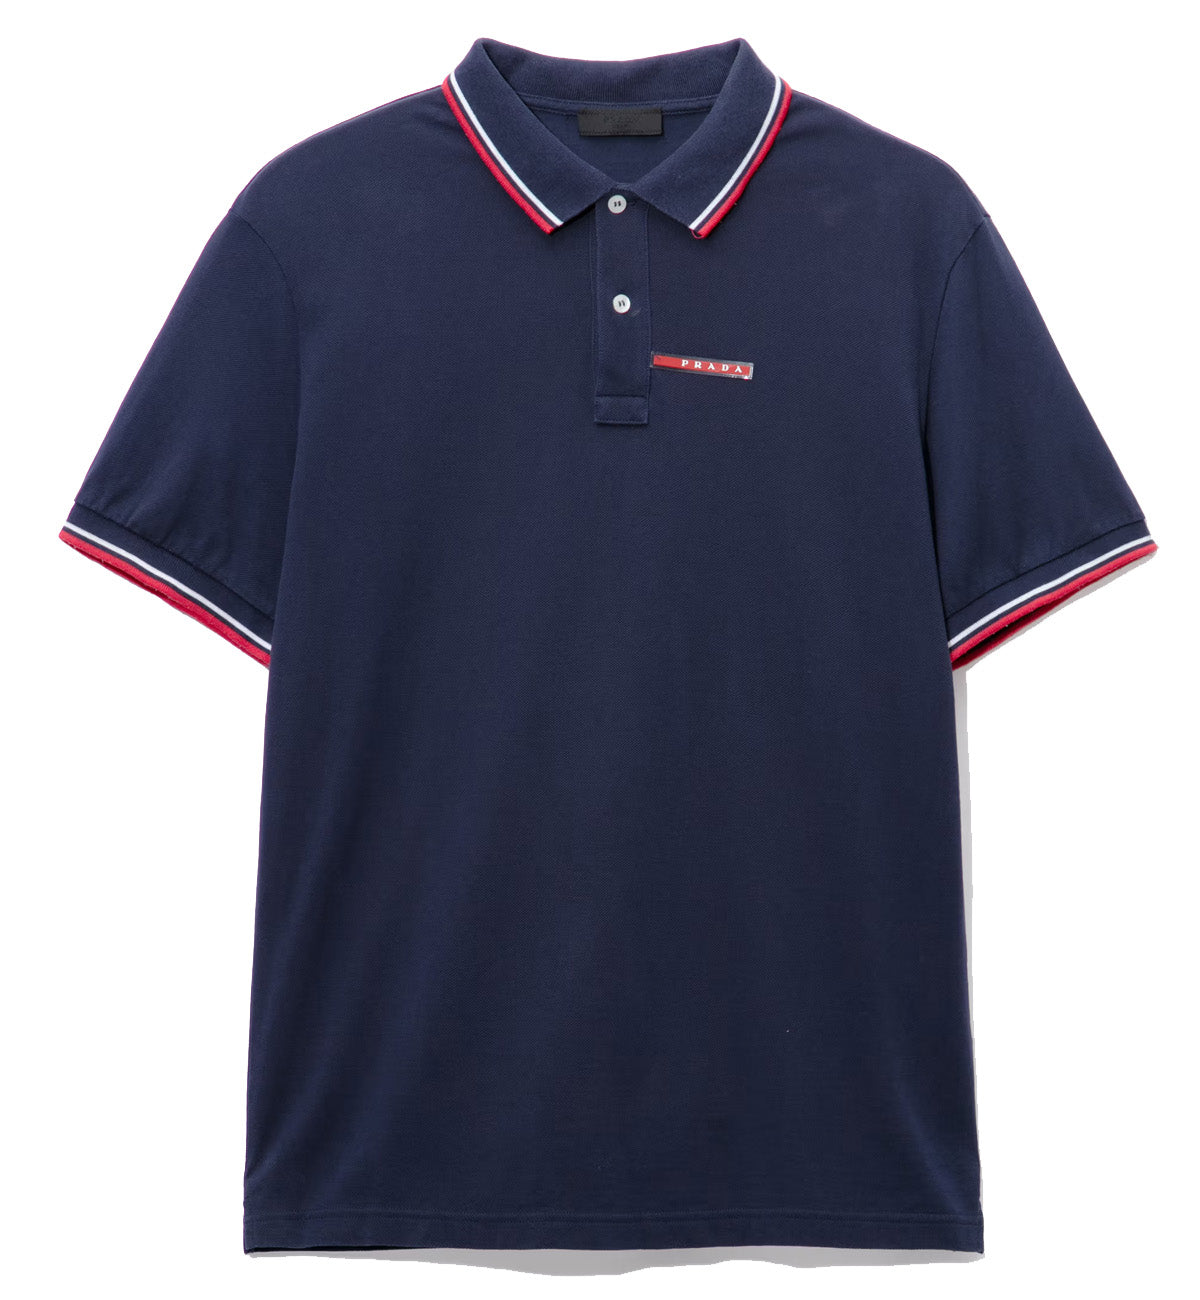 Prada Polo Shirt (Navy)